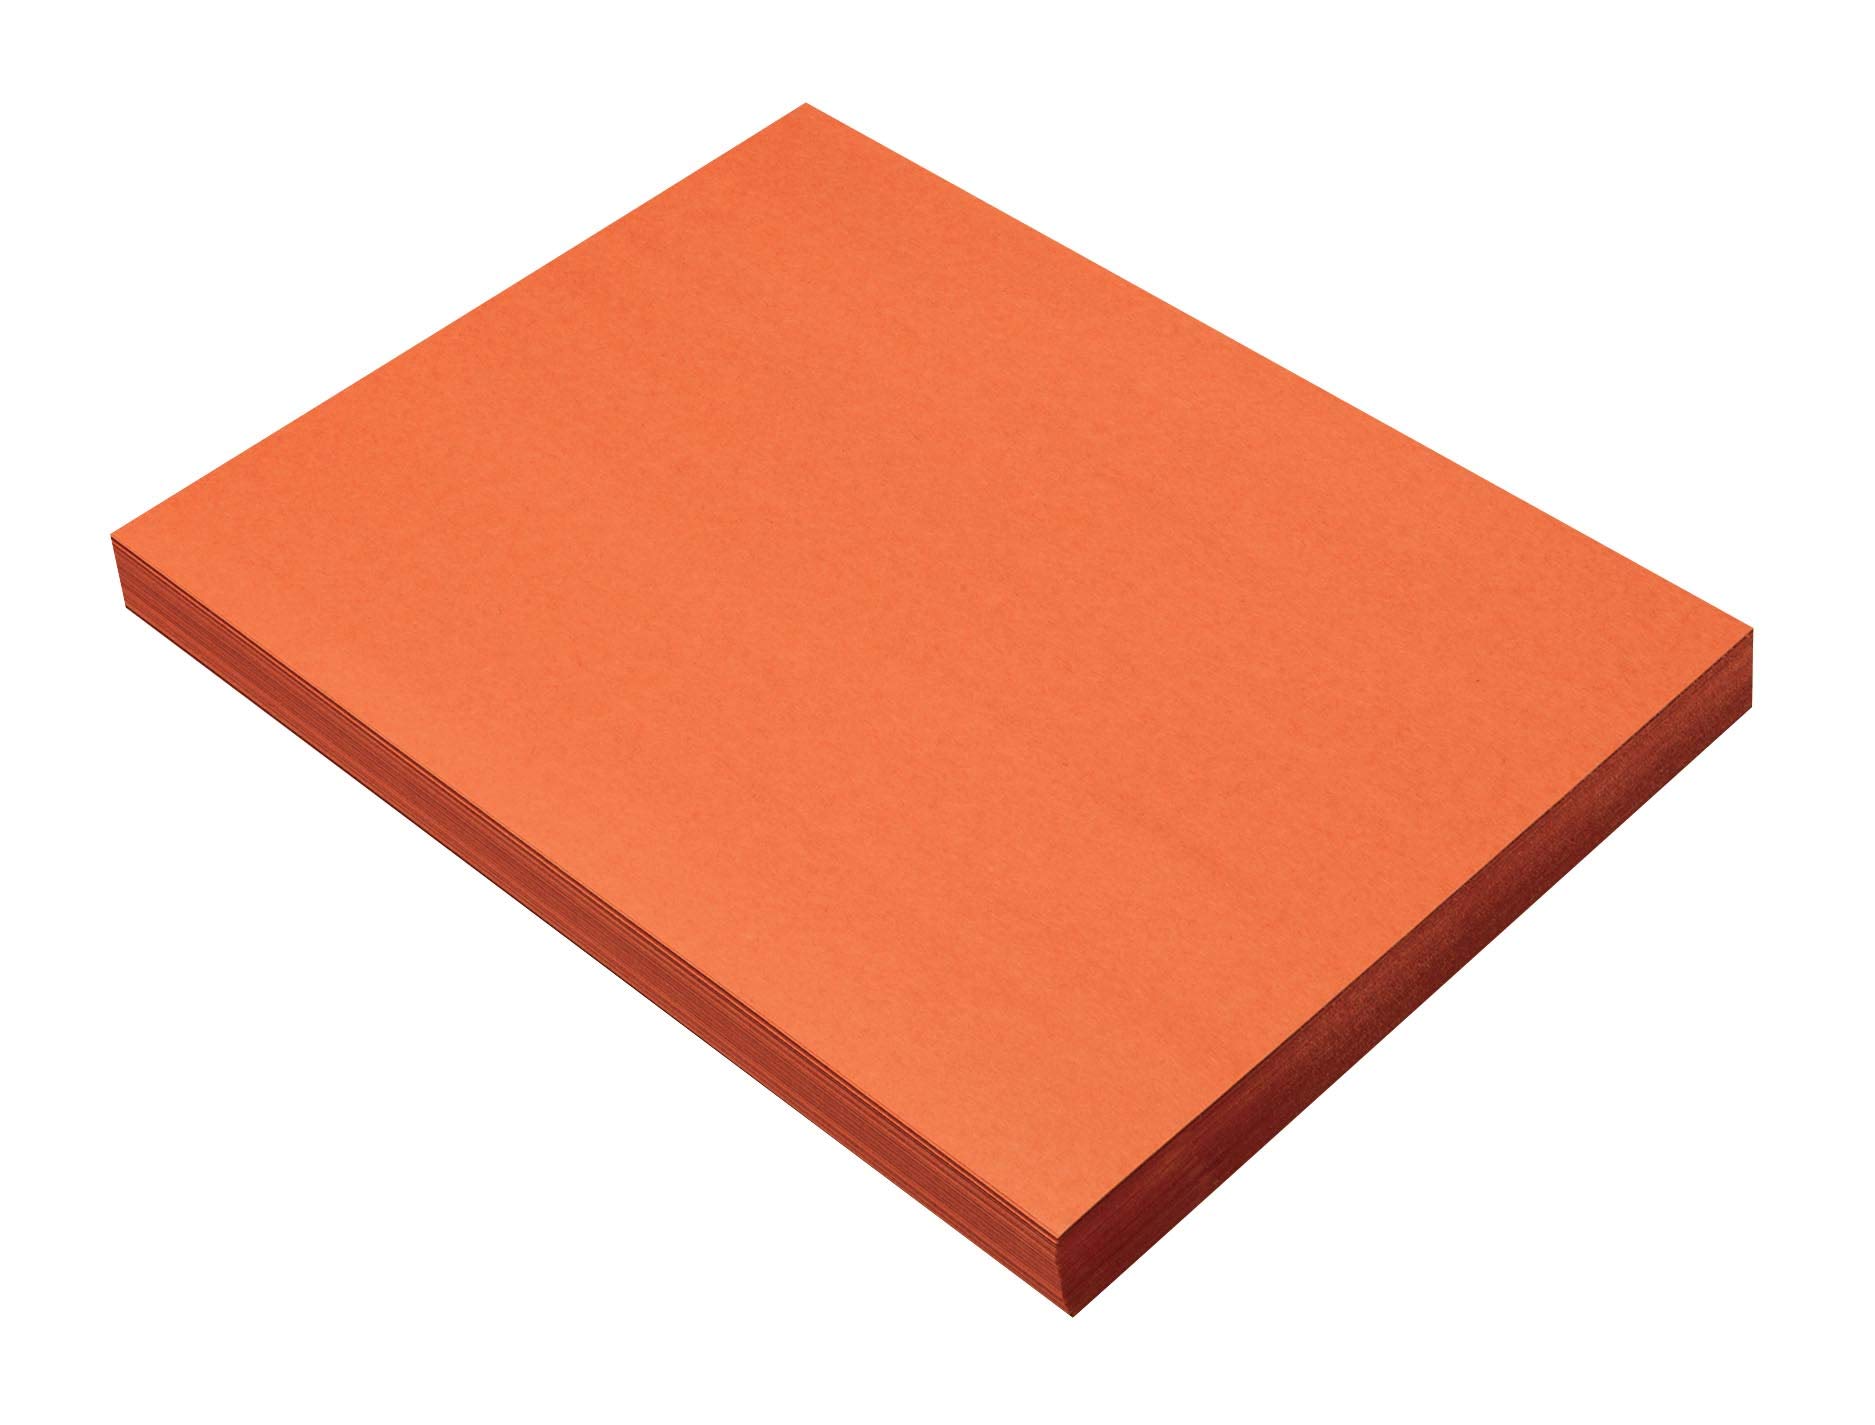 Prang (Formerly SunWorks) Construction Paper Orange 9 x 12 100 Sheets